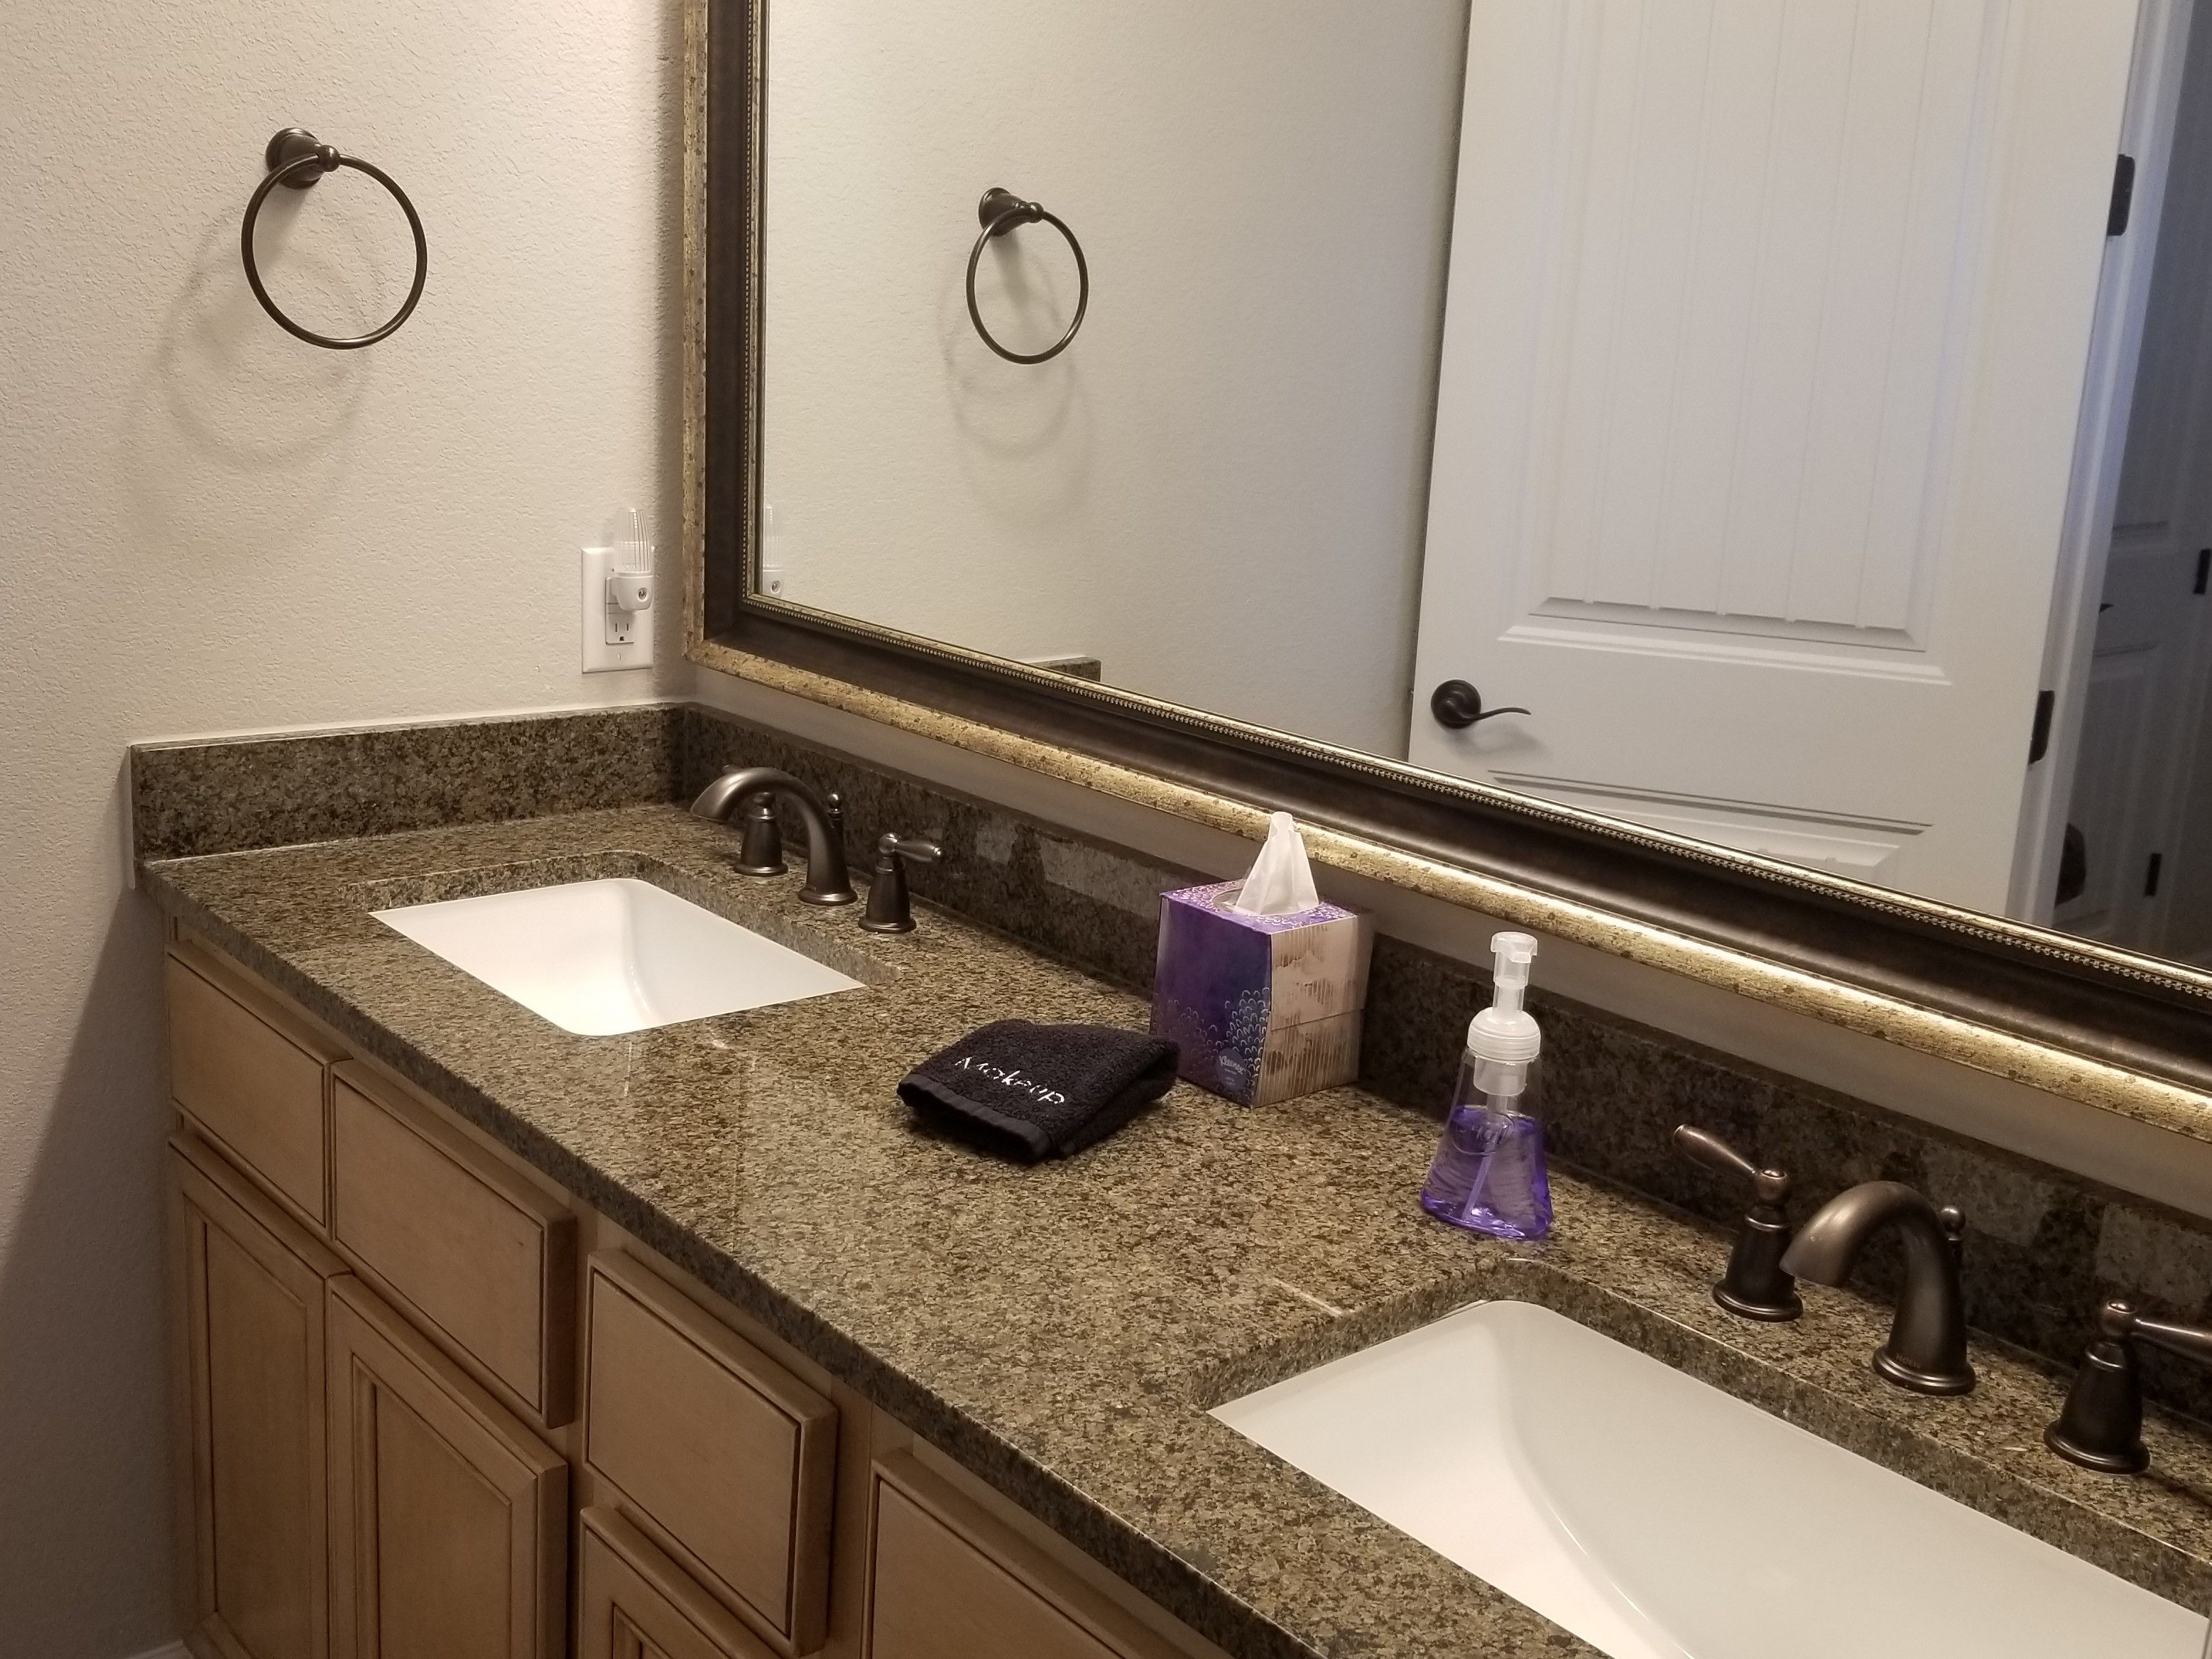 4-Rosewood Bathroom Vanity.jpg